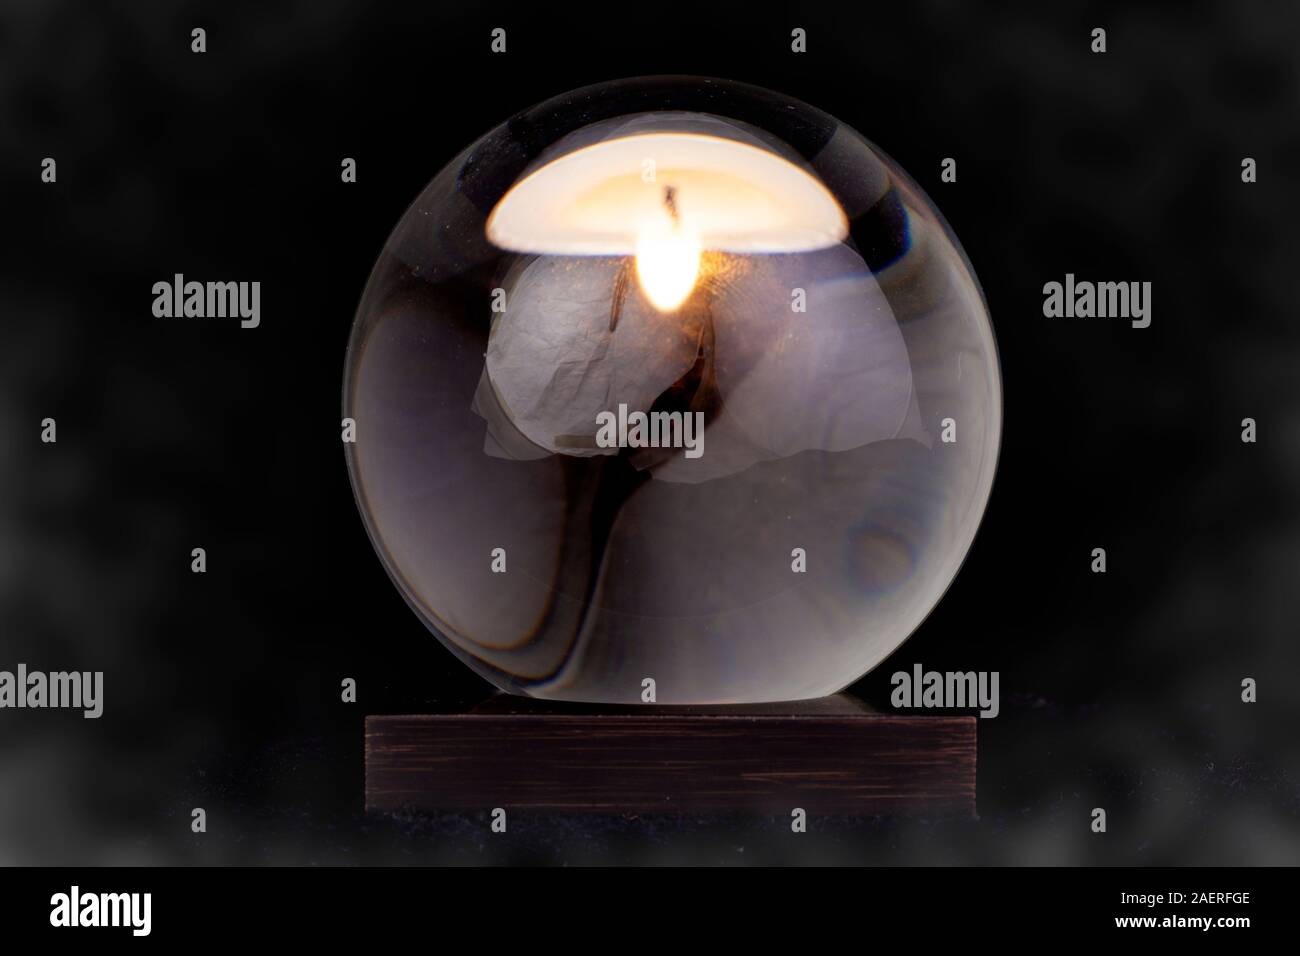 Una bola de cristal con una vela reflejada en ella contra un fondo ahumado negro. Foto de stock